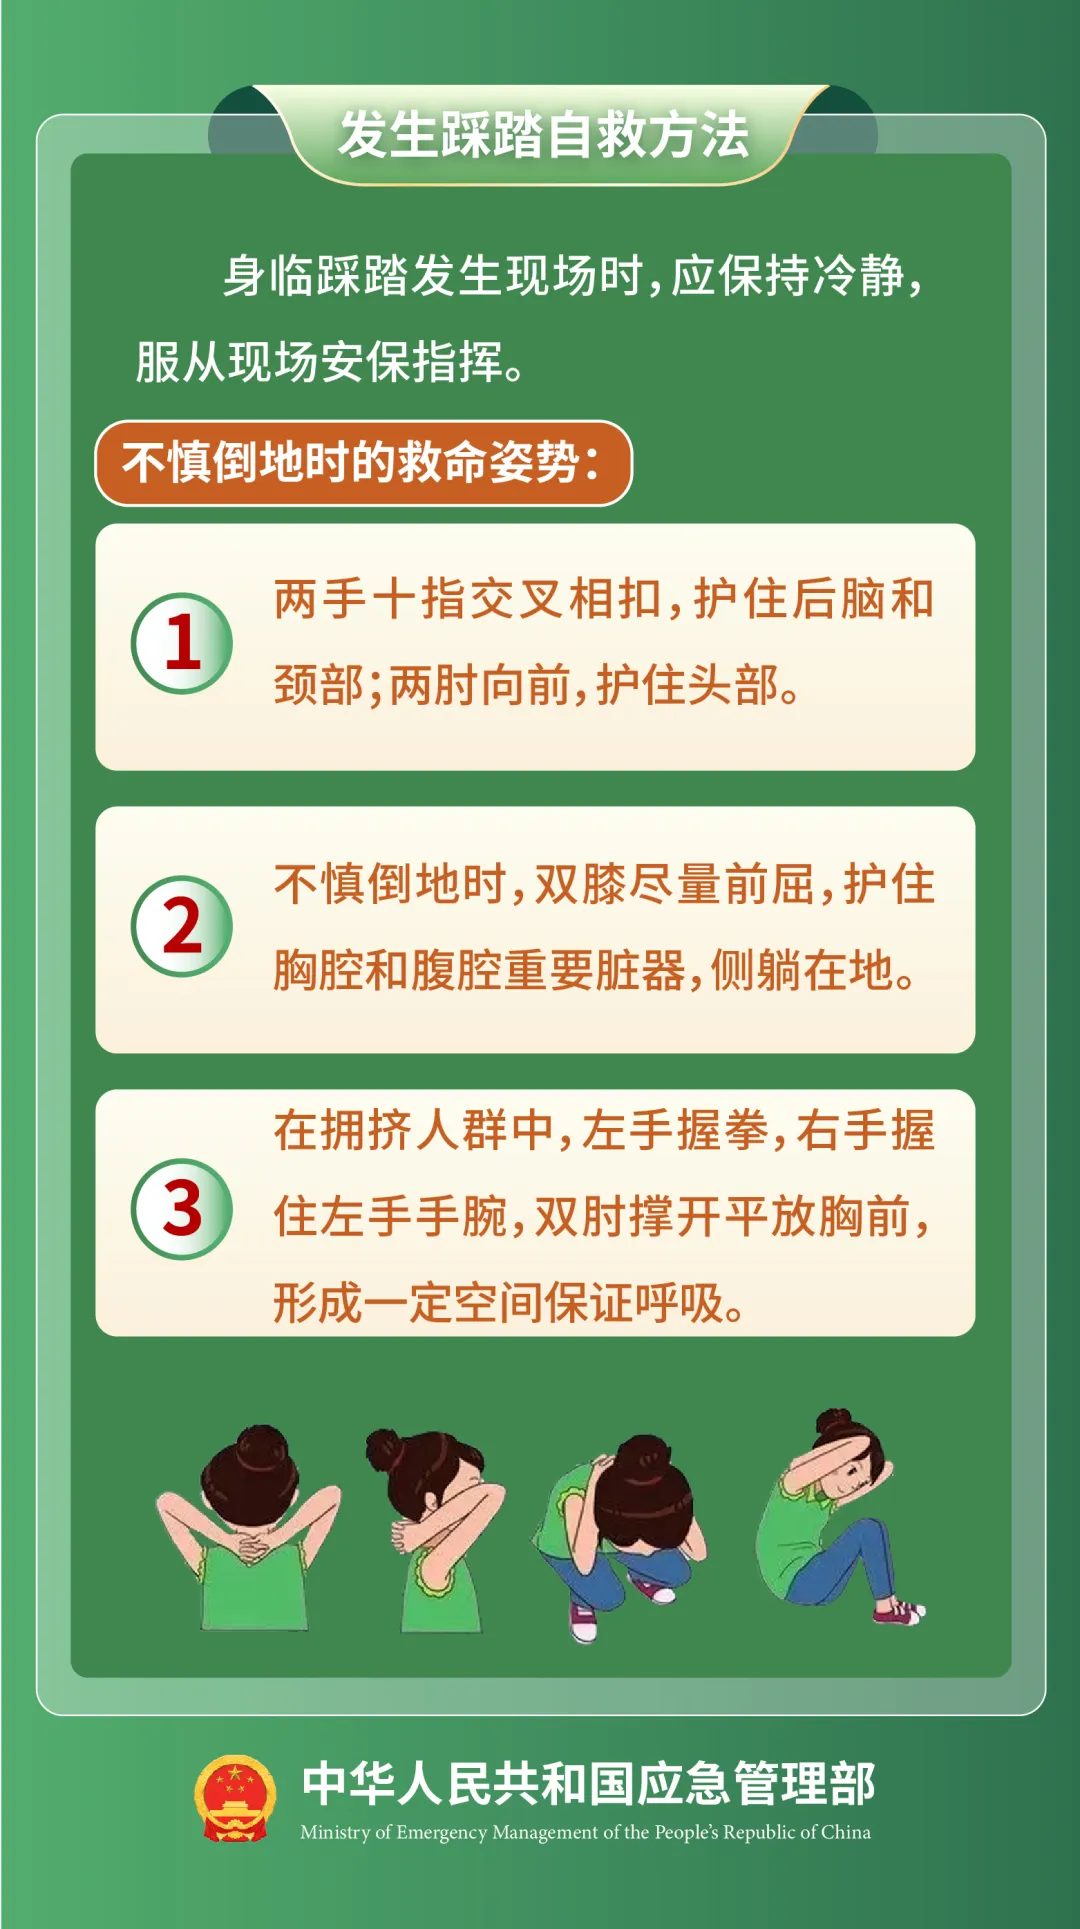 图源：中华人民共和国应急管理部微信公众号